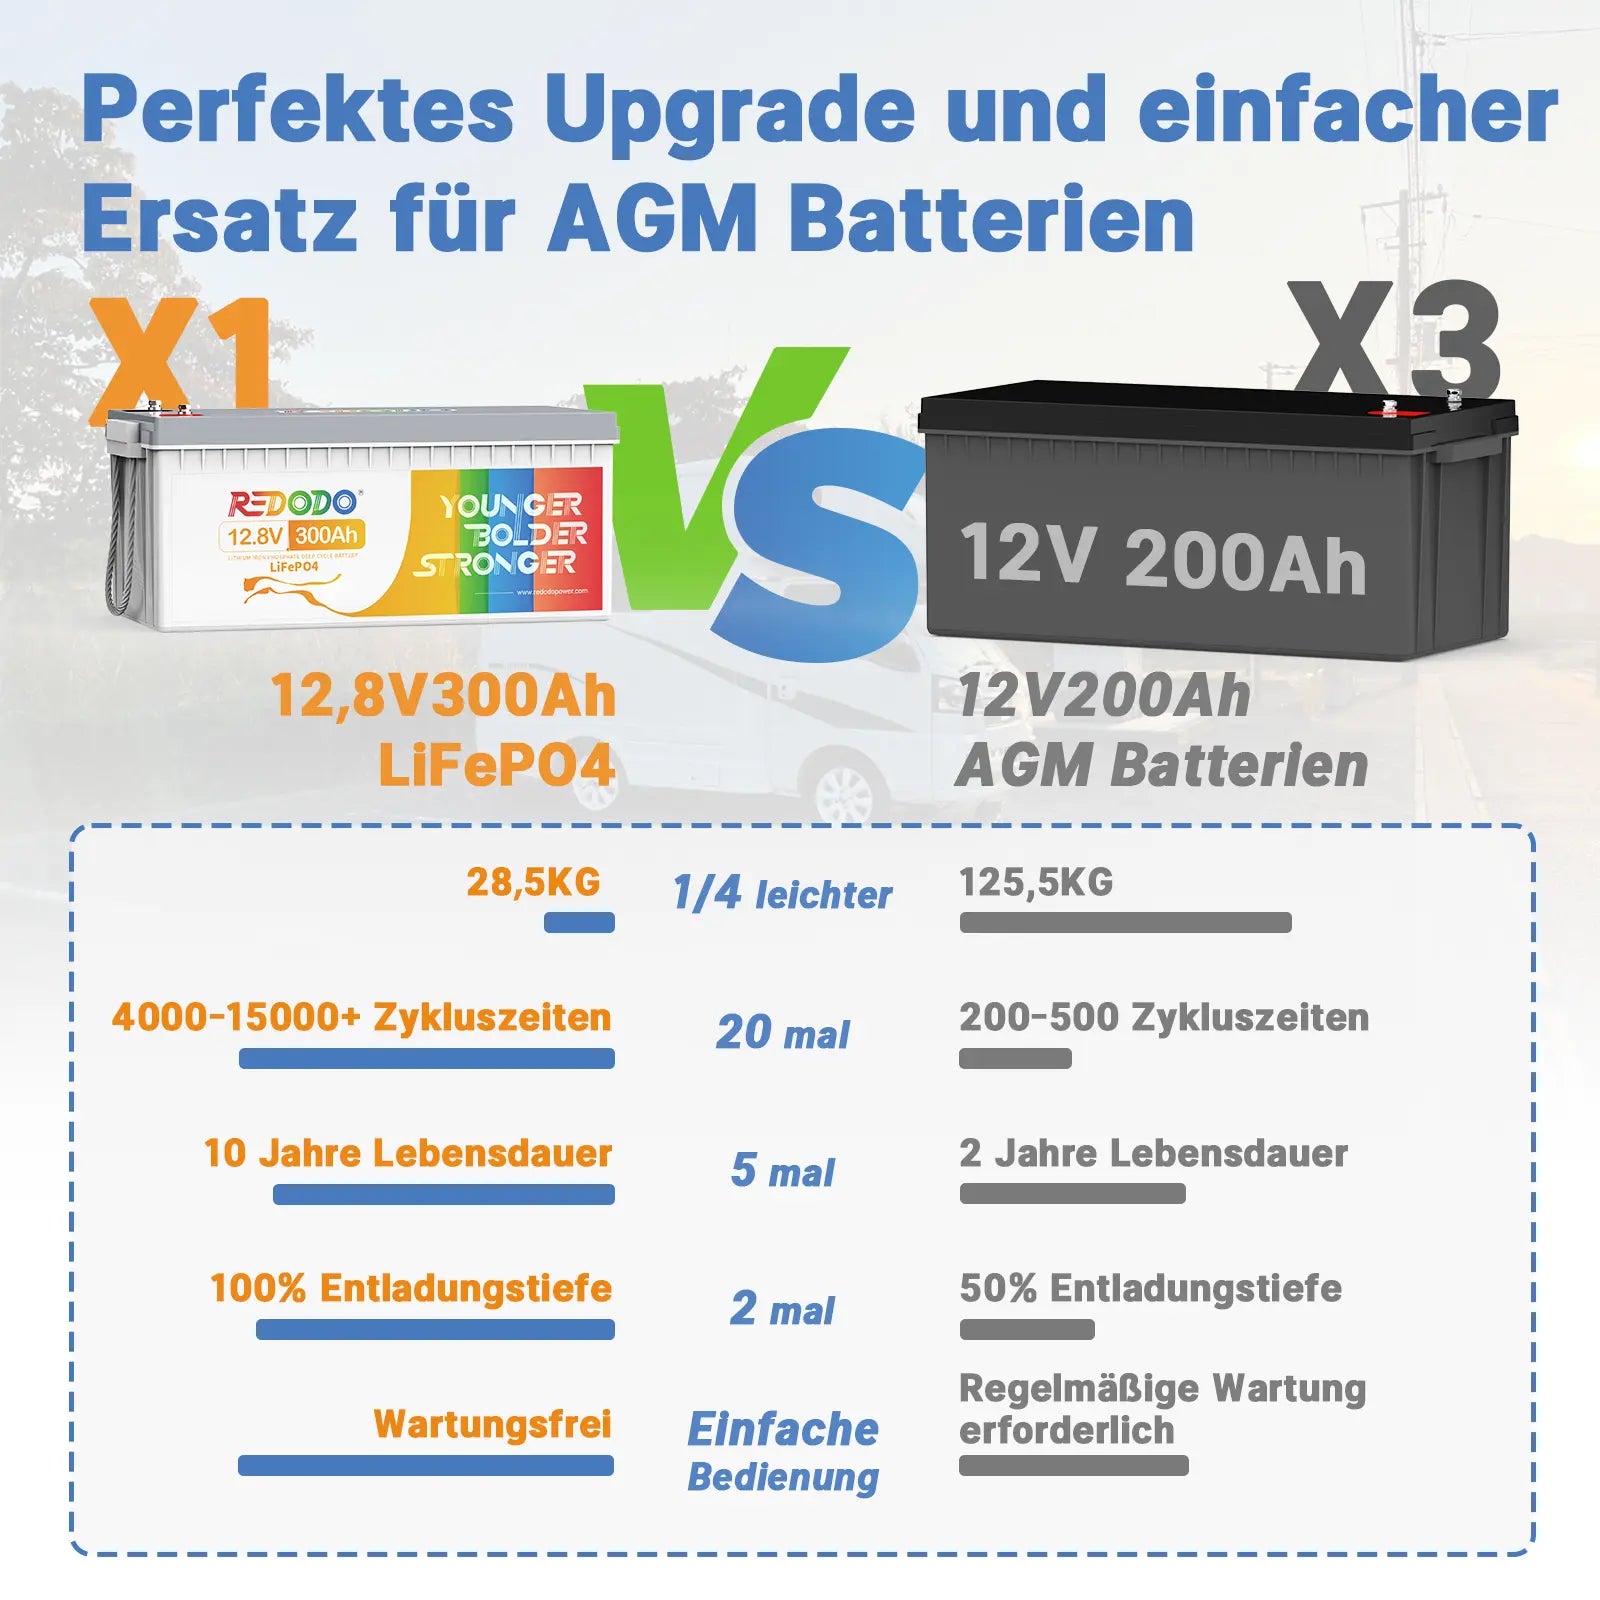 ✅Wie Neu✅Befreiung von 19% MwSt - Redodo 12V 300Ah Deep Cycle LiFePO4 Batterie - nur für Wohngebäude und Deutschland